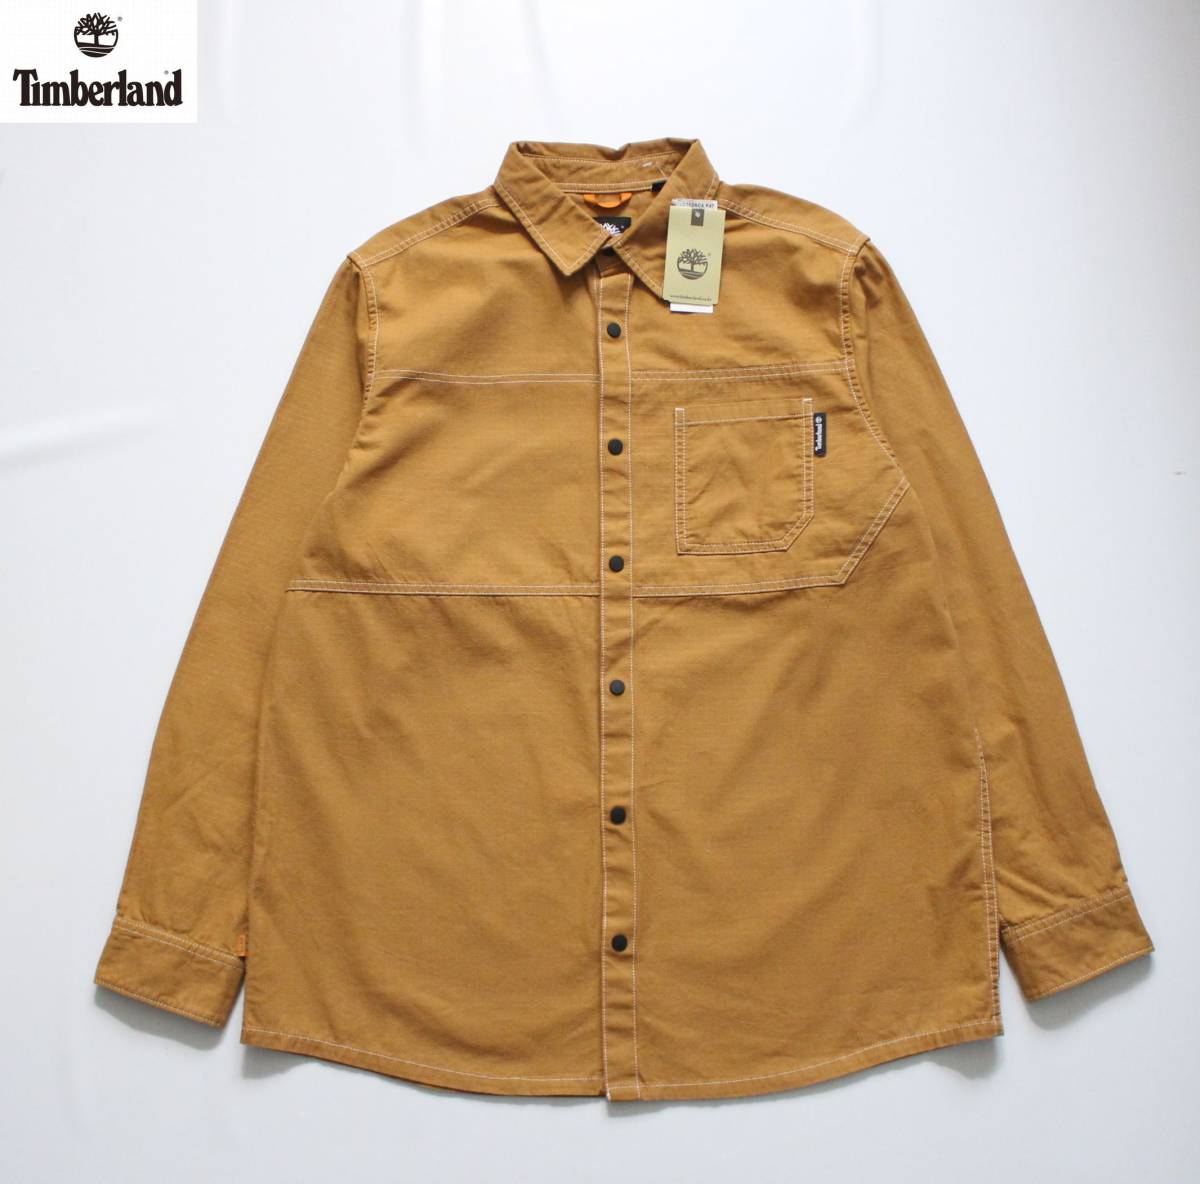  не использовался [ Timberland Timberland ] хлопок длинный рукав рубашка work shirt L/G TB0A2AC4 P47 обычная цена \\12,650 кнопка-застежка принт YELLOW BOOT